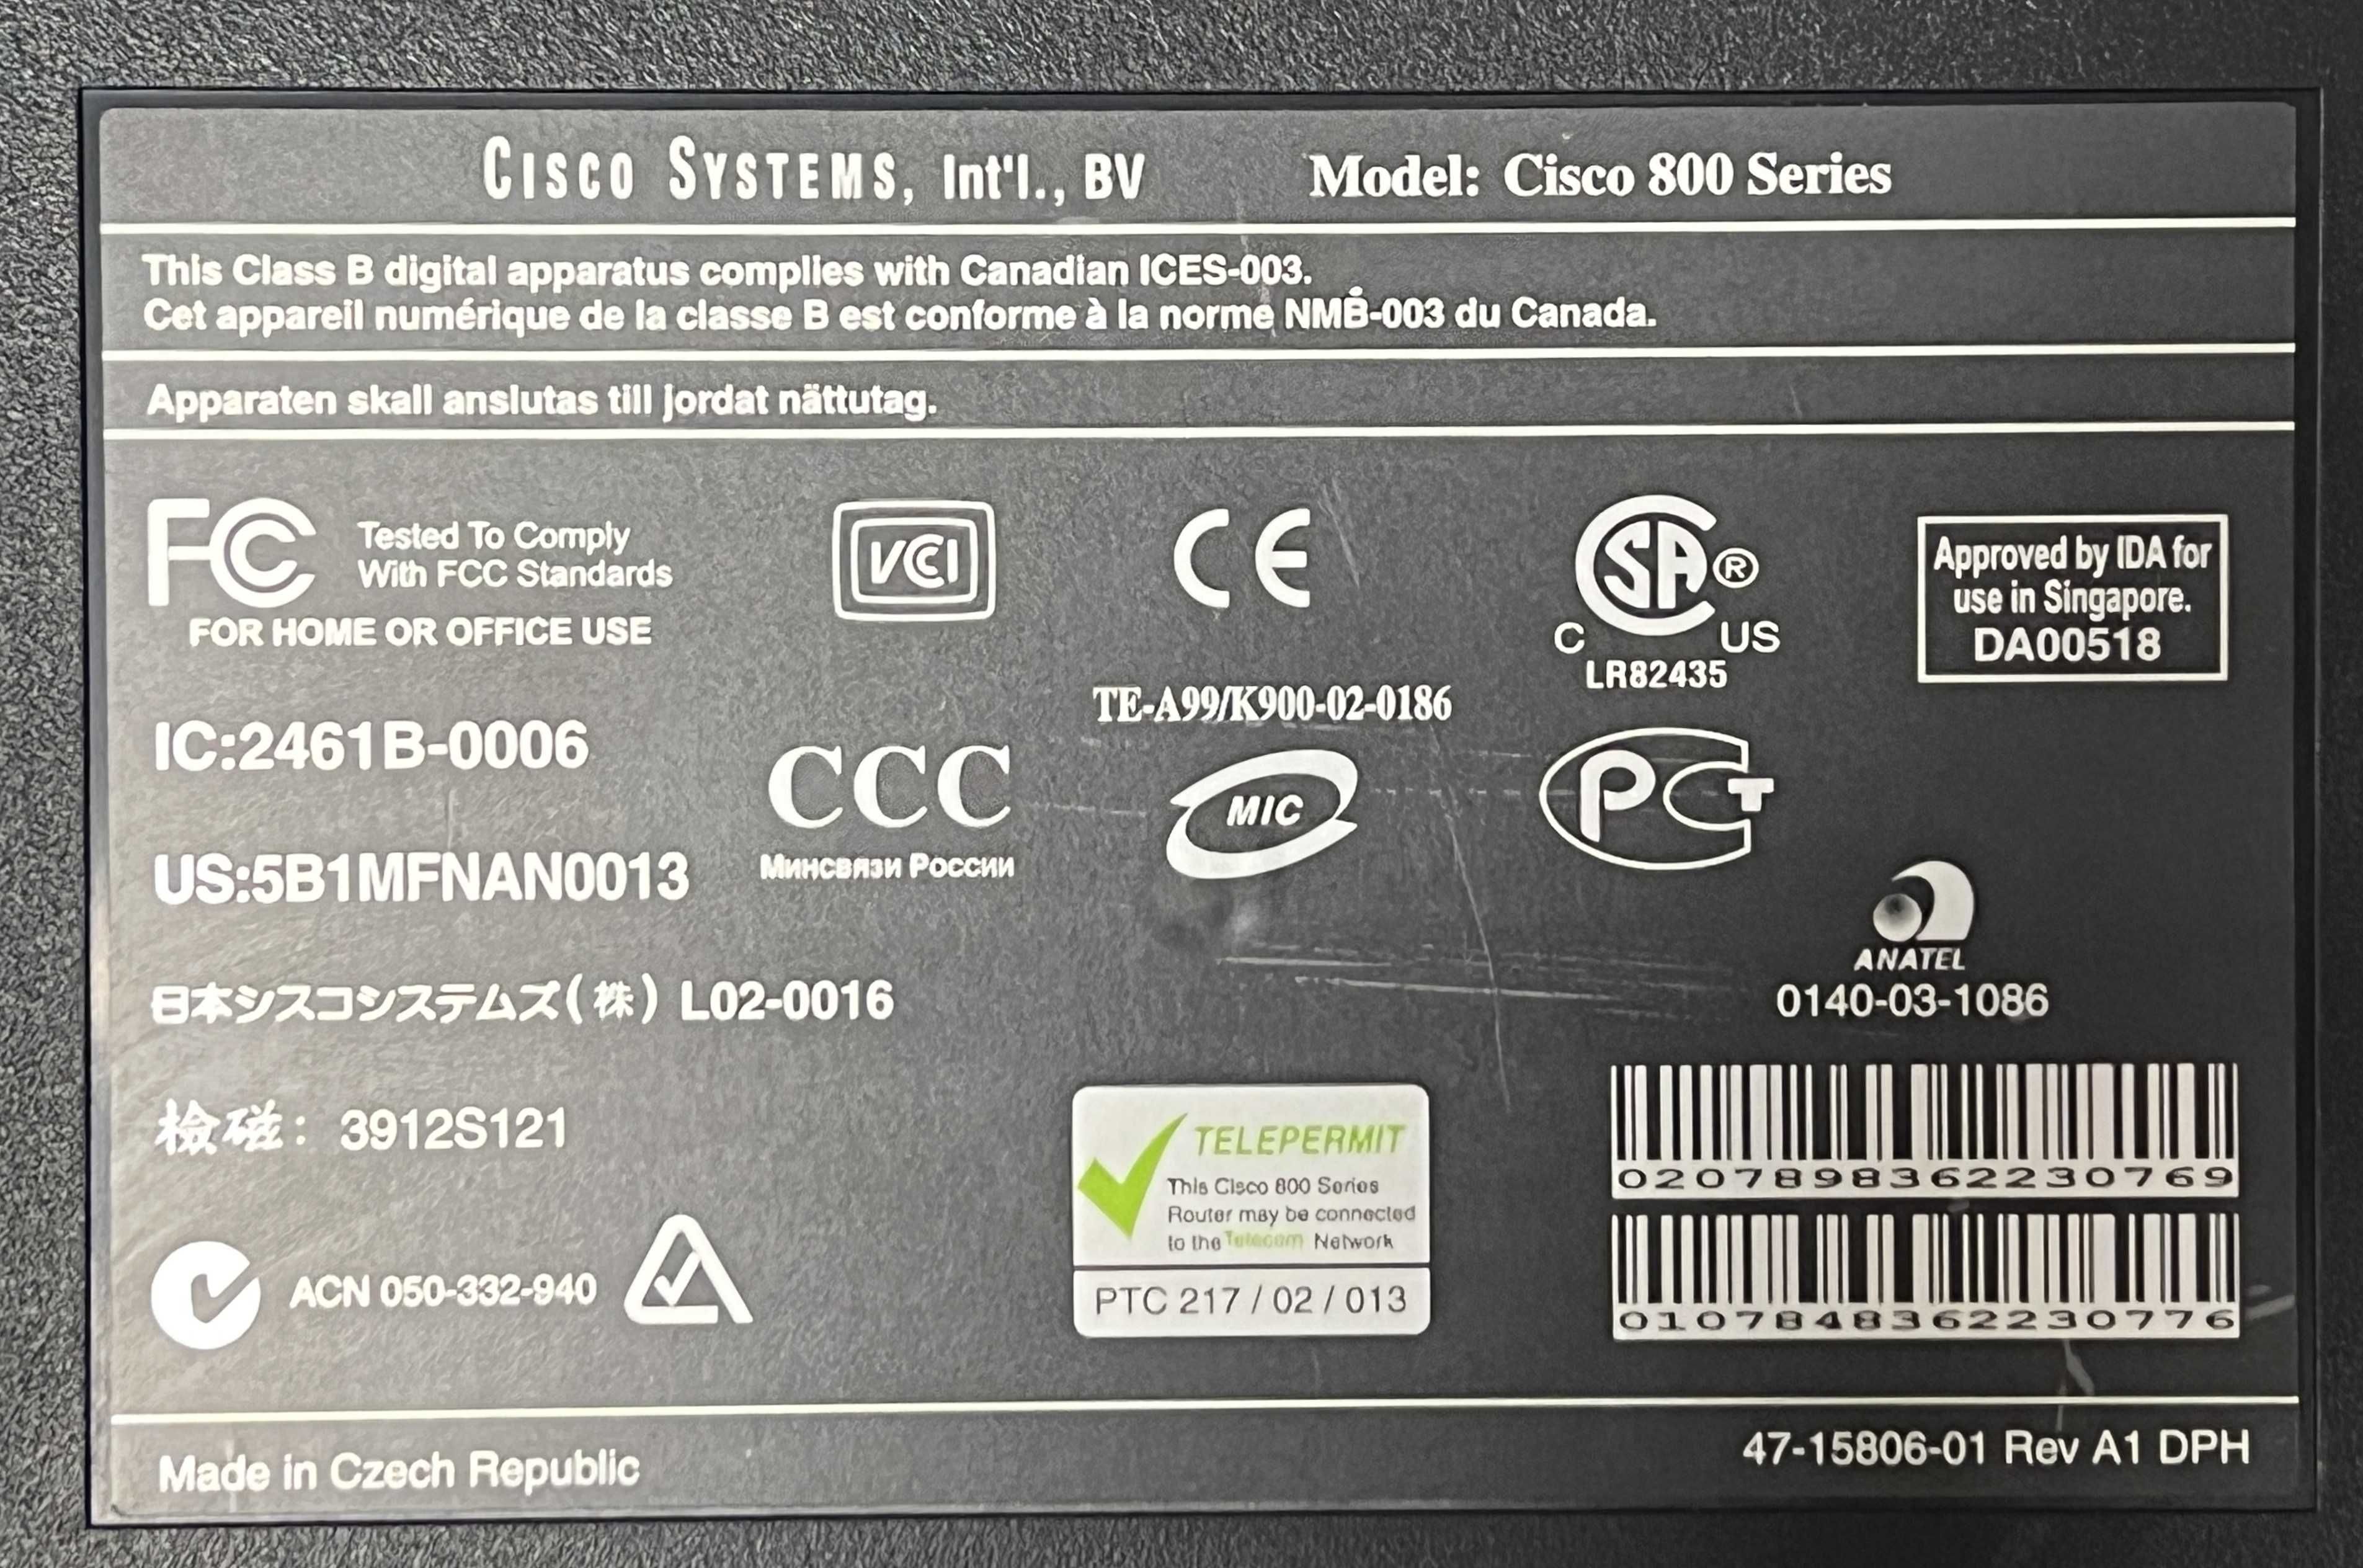 Router Cisco 805 Series 800 - Usado